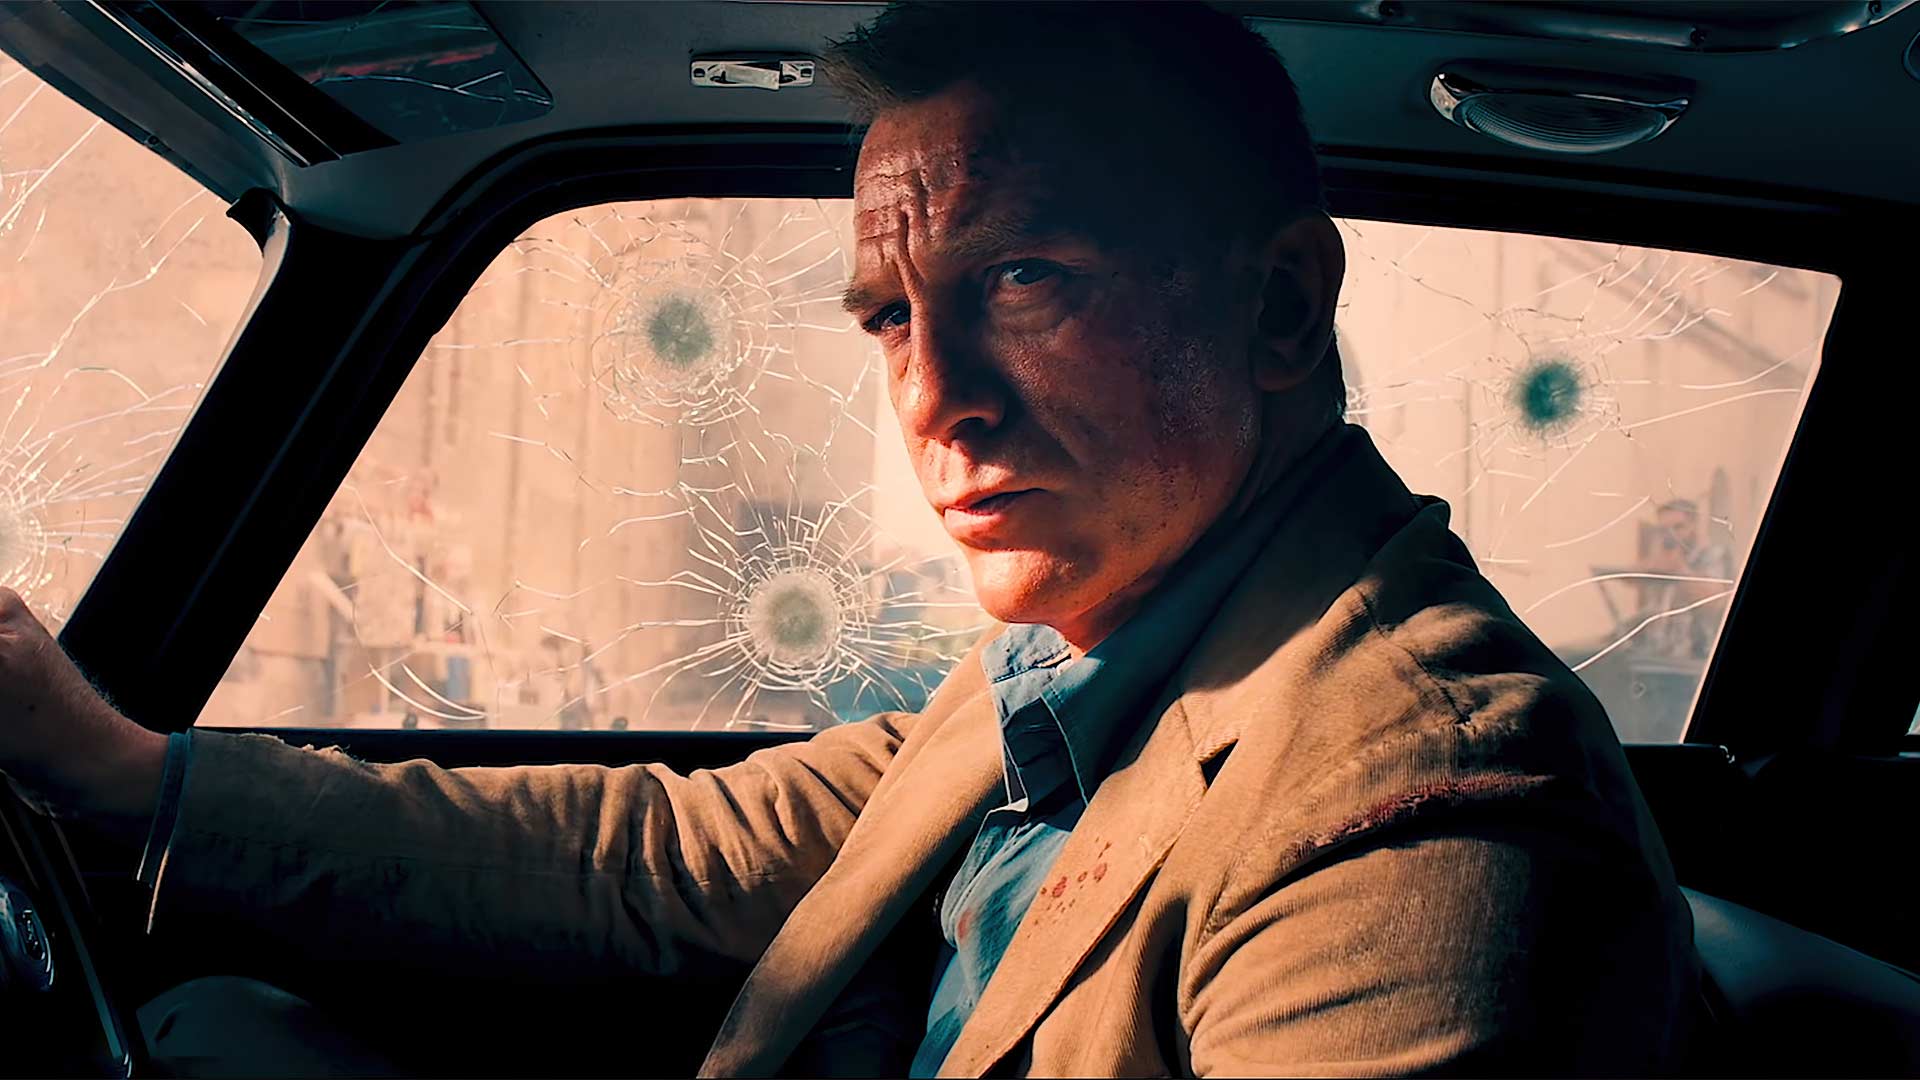 دنیل کریگ در نقش جیمز باند در ماشین استون مارتین که به گلوله بسته شده در فیلم No Time To Die